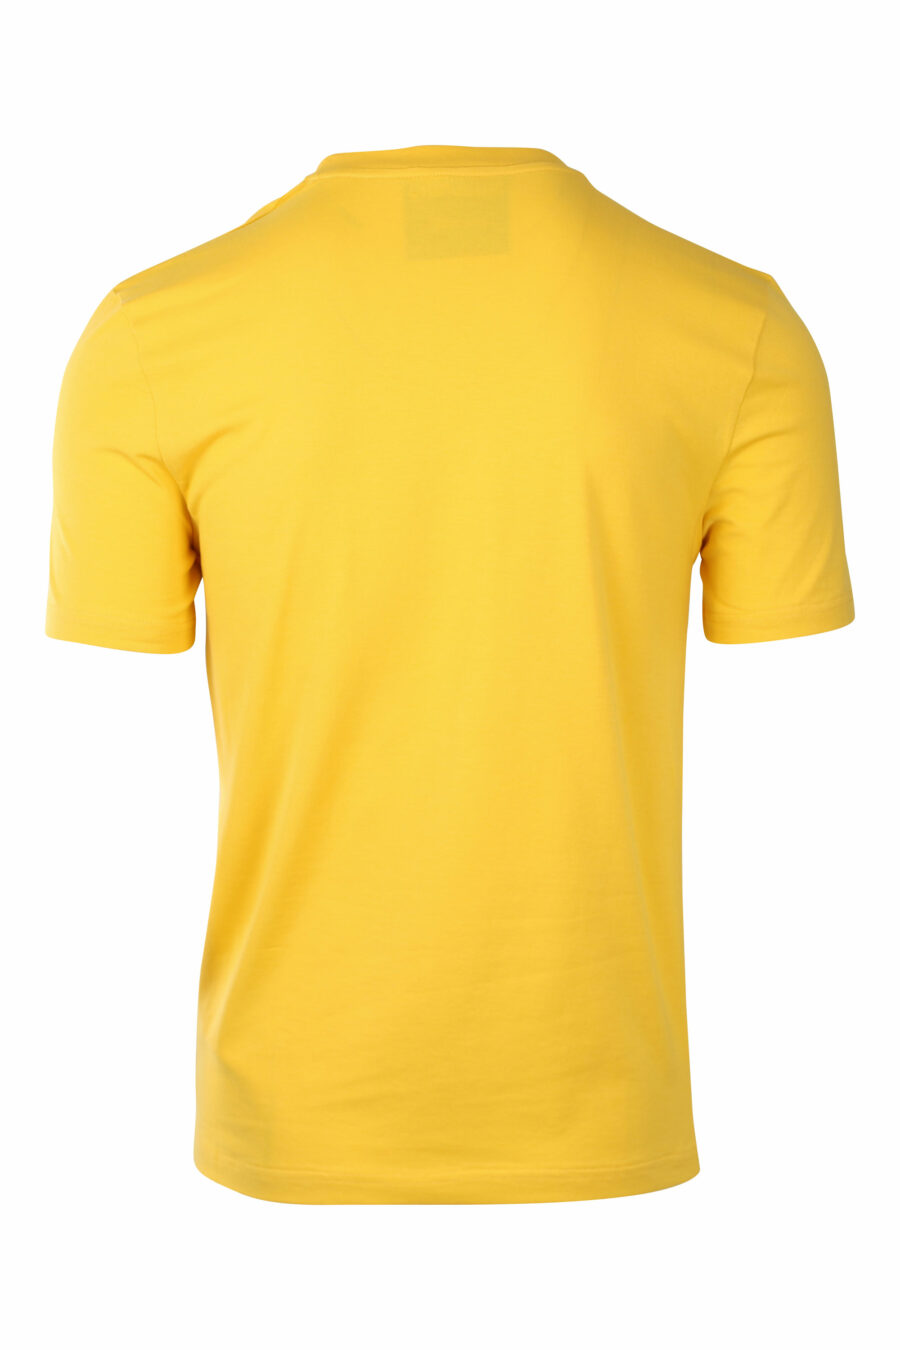 T-shirt amarela com o logótipo "signature" - IMG 1422